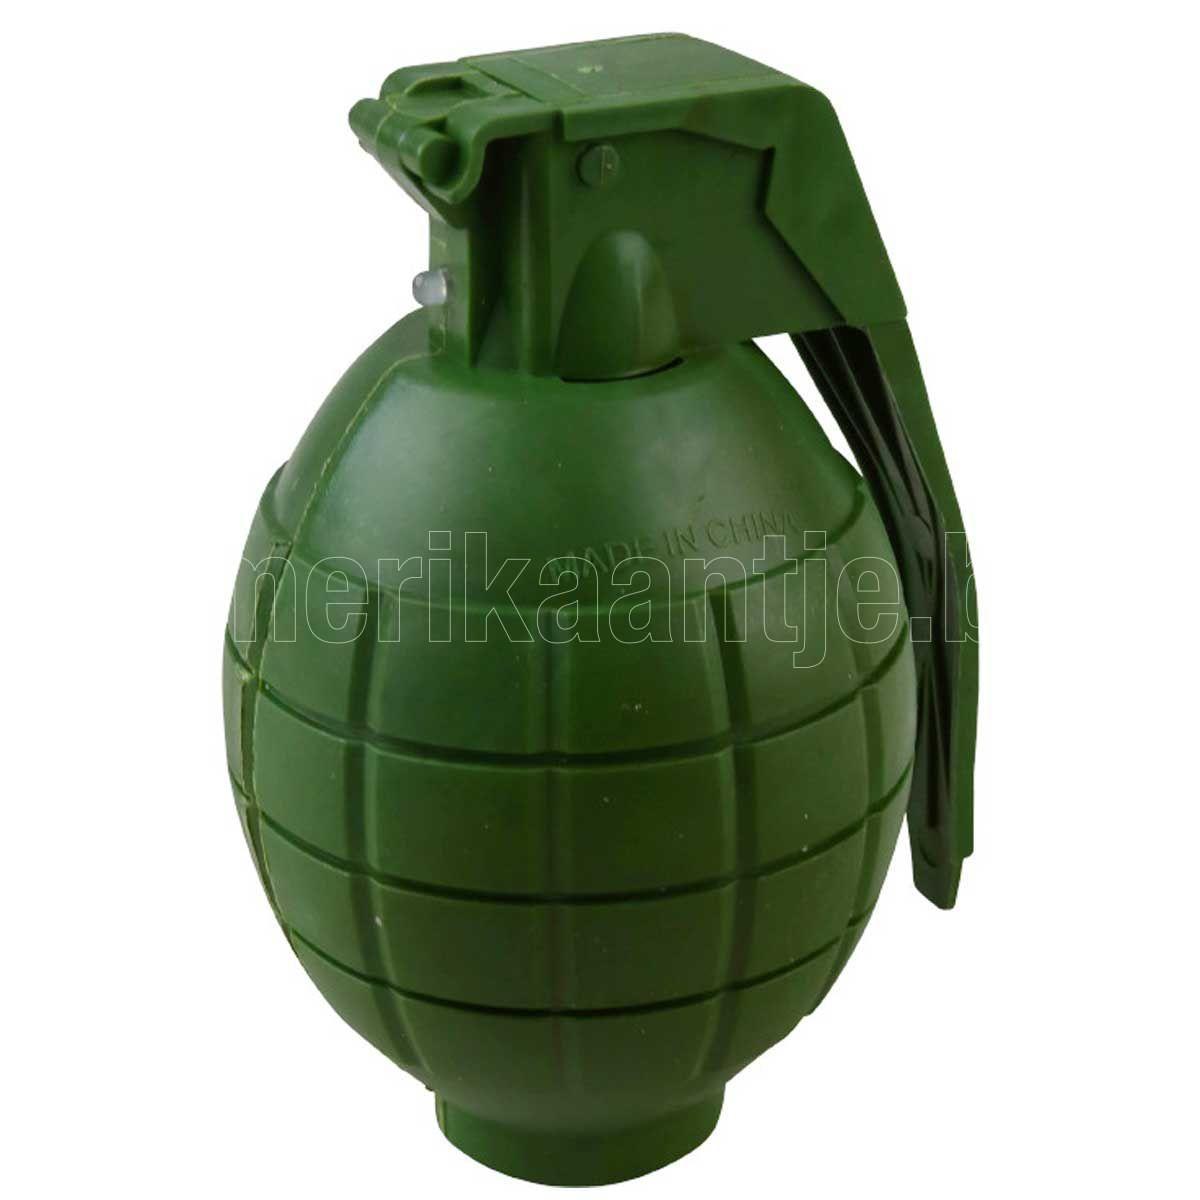 Grenade-jouet - 't Amerikaantje